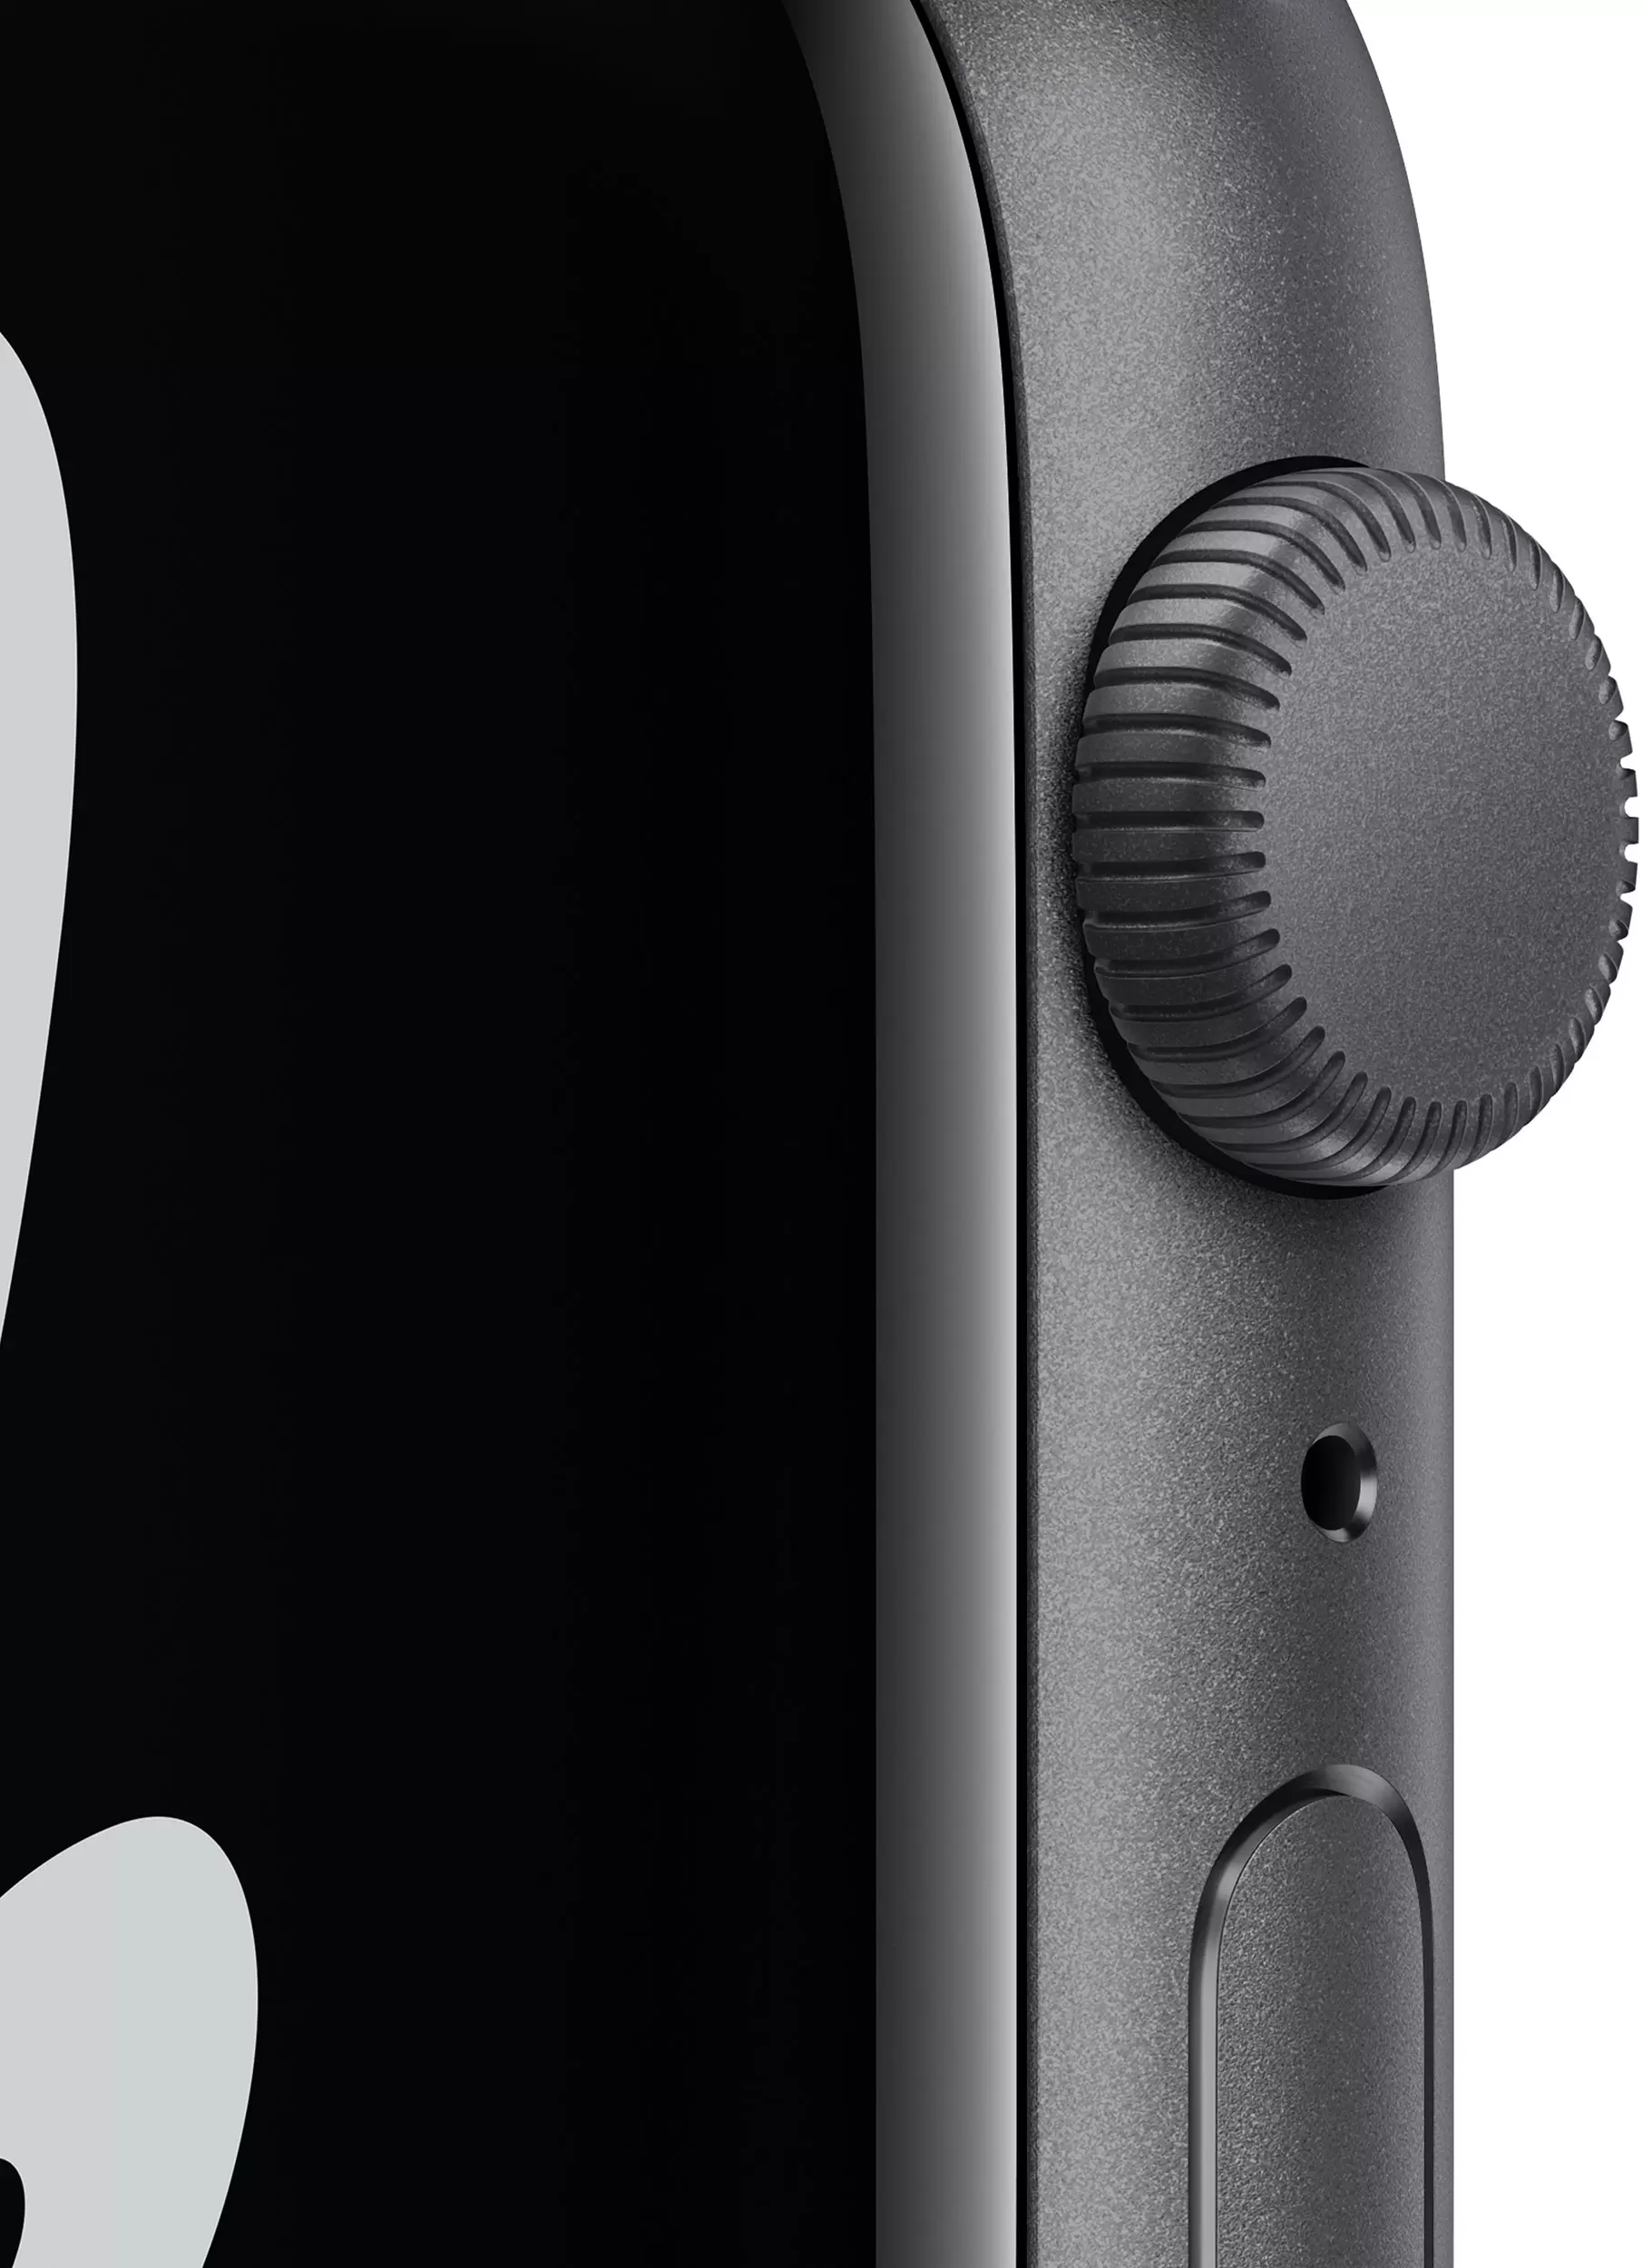 Apple Watch Nike SE, 44 мм, корпус из алюминия цвета (серый космос), спортивный ремешок Nike антрацитового/чёрного цвета